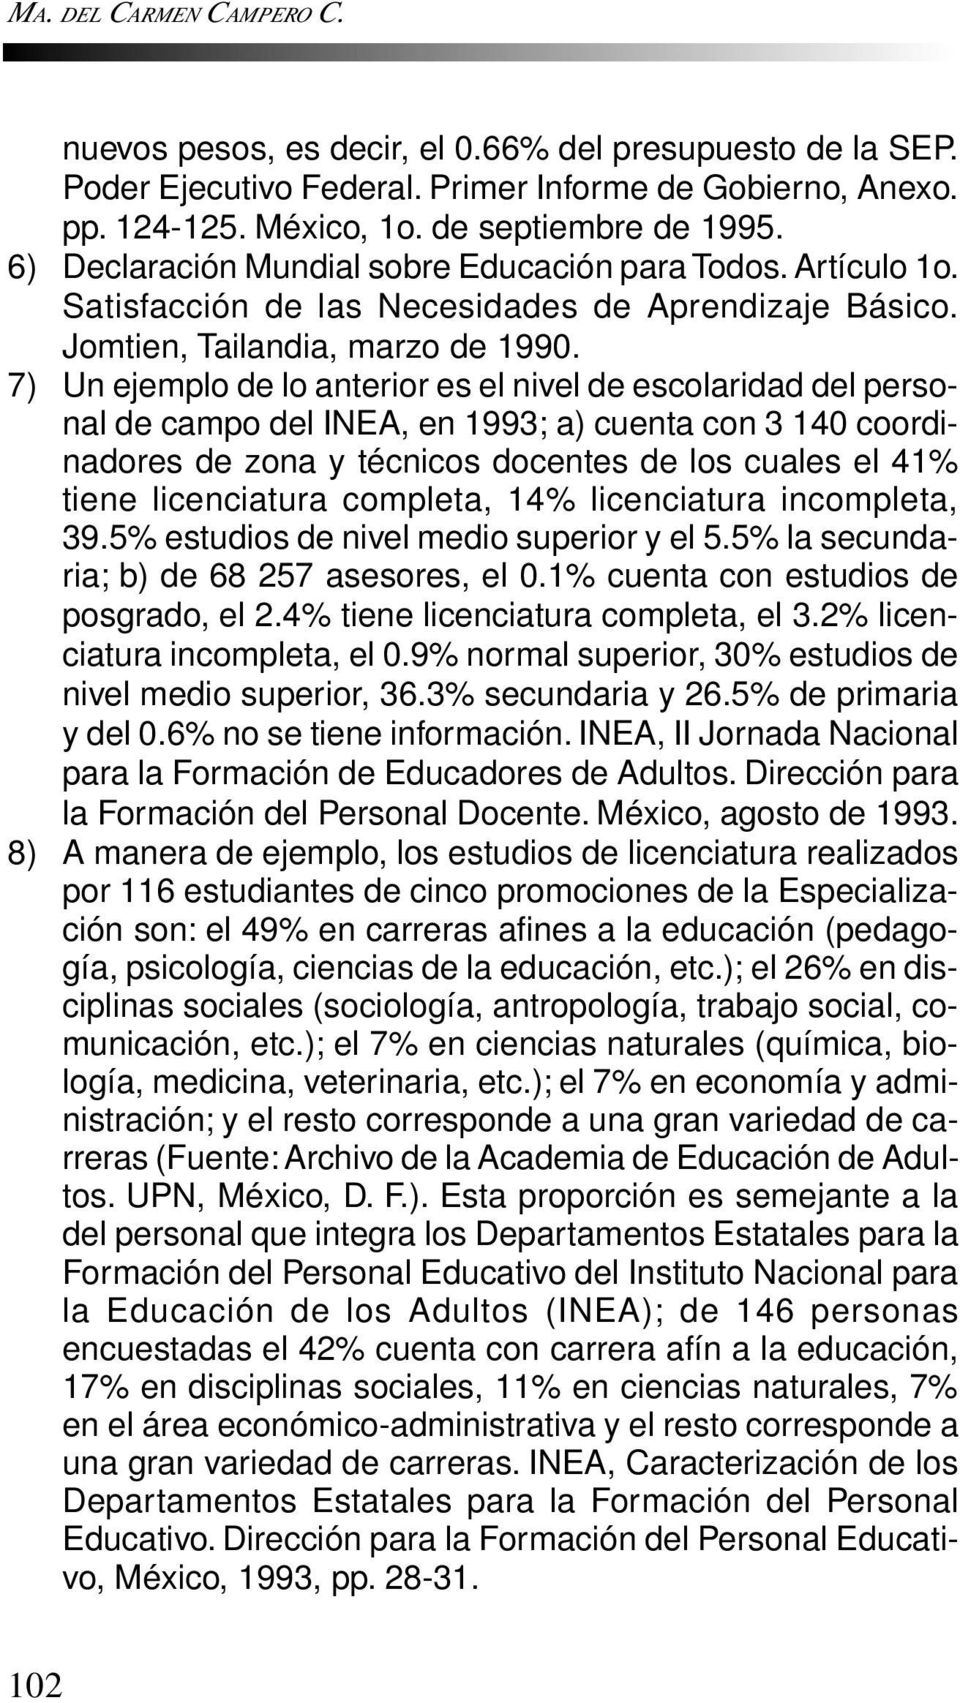 7) Un ejemplo de lo anterior es el nivel de escolaridad del personal de campo del INEA, en 1993; a) cuenta con 3 140 coordinadores de zona y técnicos docentes de los cuales el 41% tiene licenciatura